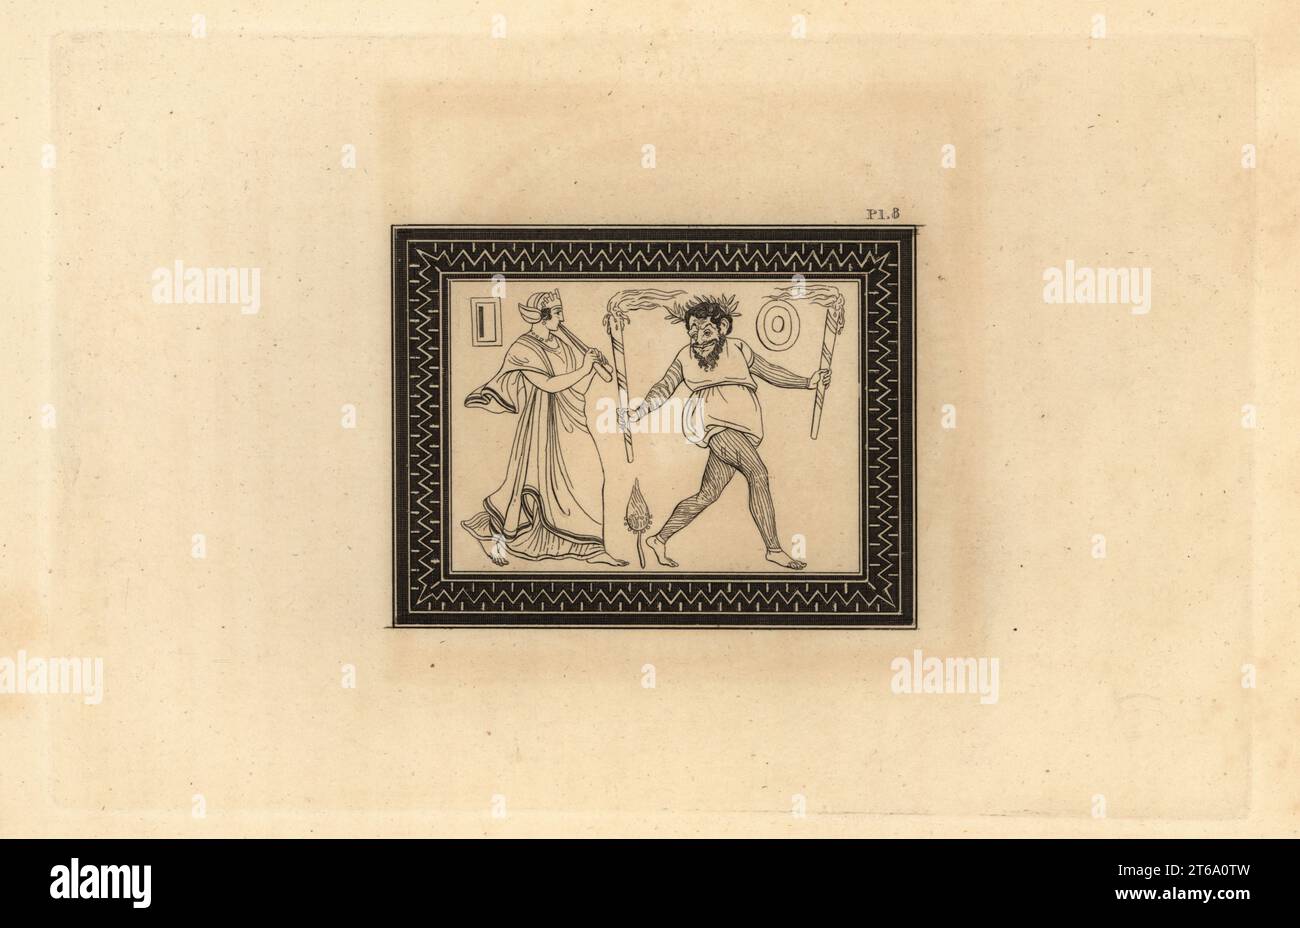 Eine Szene aus einer Komödie mit einem Schauspieler, der als versklavte Person verkleidet ist und eine Maske von Sosius trägt, der zur Musik einer Doppelflöte (Aulos oder Tibia) tanzt, die von einer unmaskierten Frau gespielt wird. Ananas bedeutet, dass die Show Bacchus gewidmet ist. Kupferstich von Thomas Kirk (1765–1797) von Sir William Hamiltons skizziert die Figuren und Kompositionen auf den griechischen, römischen und etruskischen Vasen des verstorbenen Sir Hamilton, T. MLean, London, 1834. Stockfoto